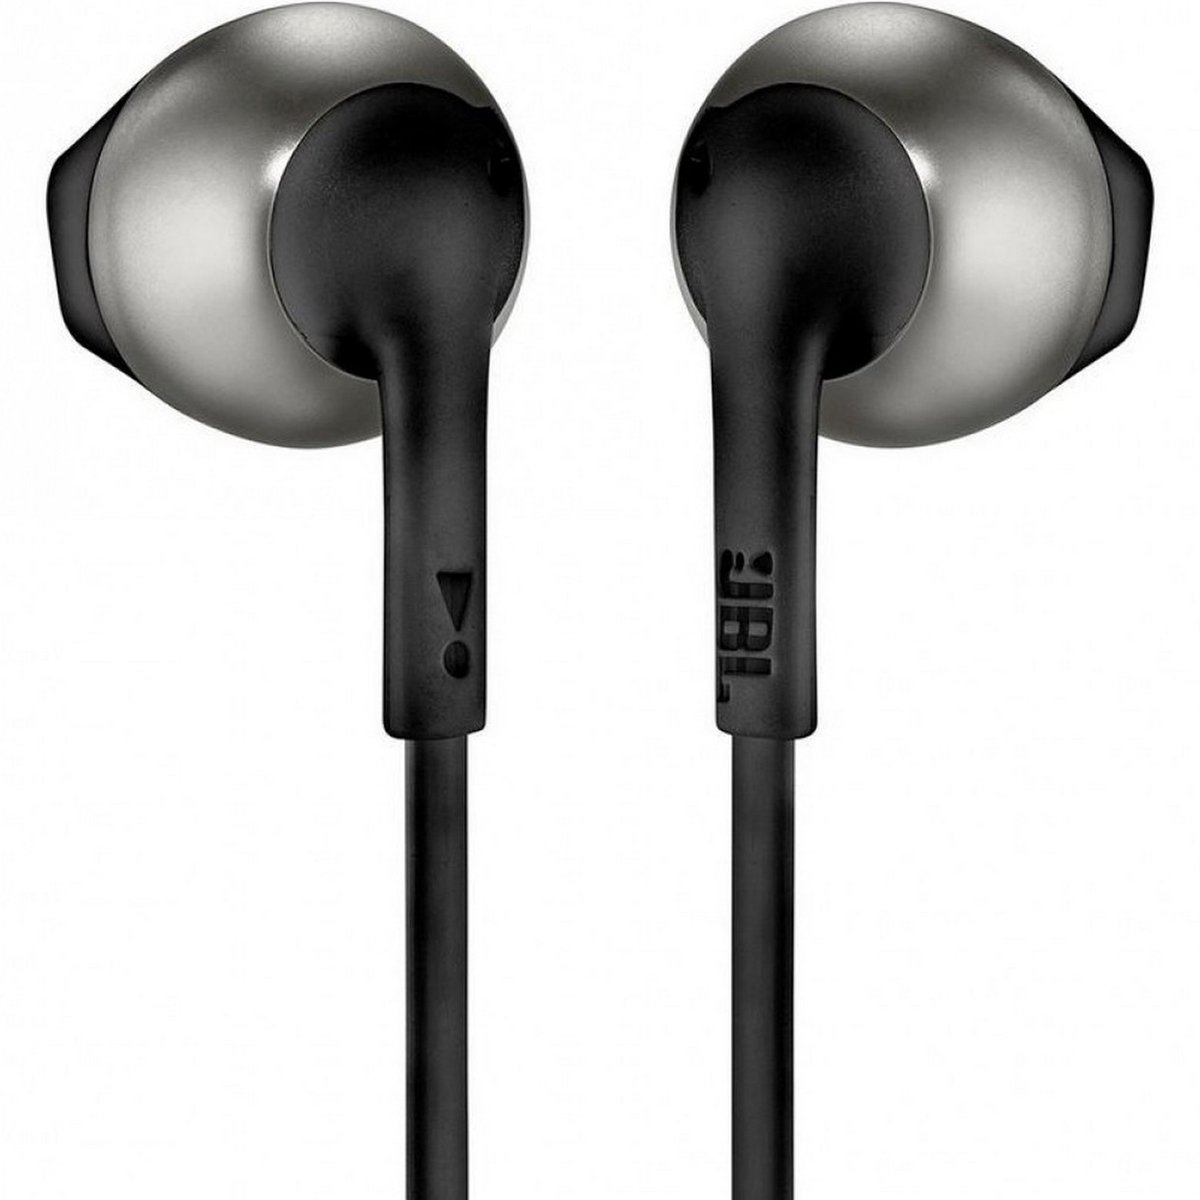 JBL In-Ear Headphone T205 Black